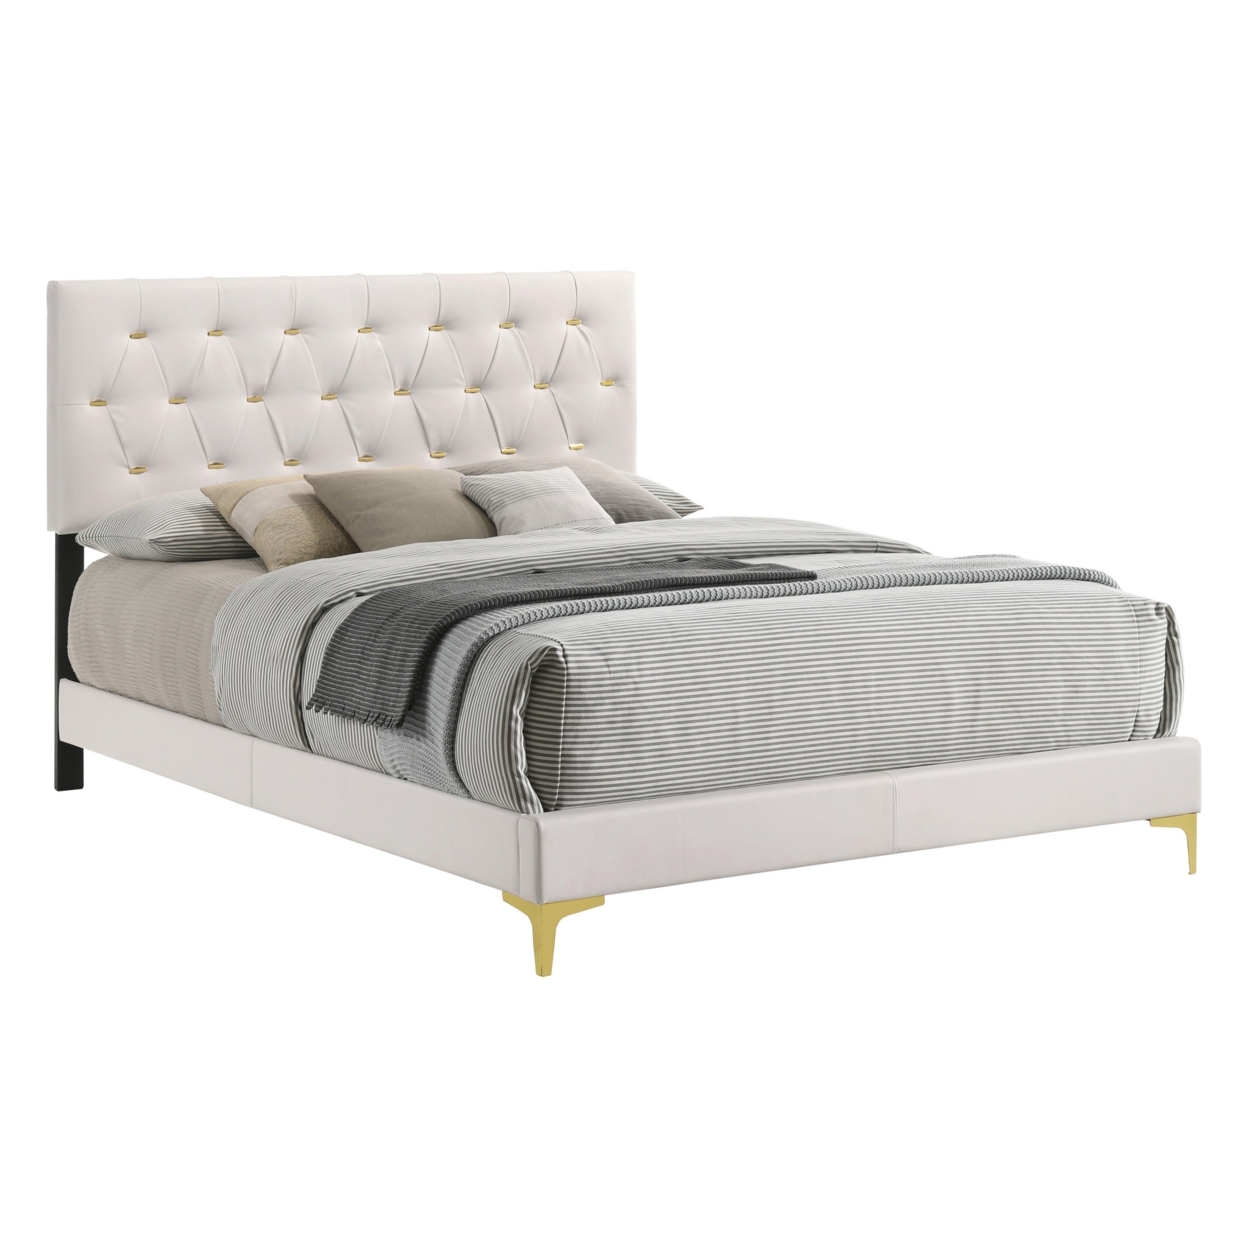 Lif Platform California King Size Bed, Tufted Headboard, Gold, White Velvet- Saltoro Sherpi